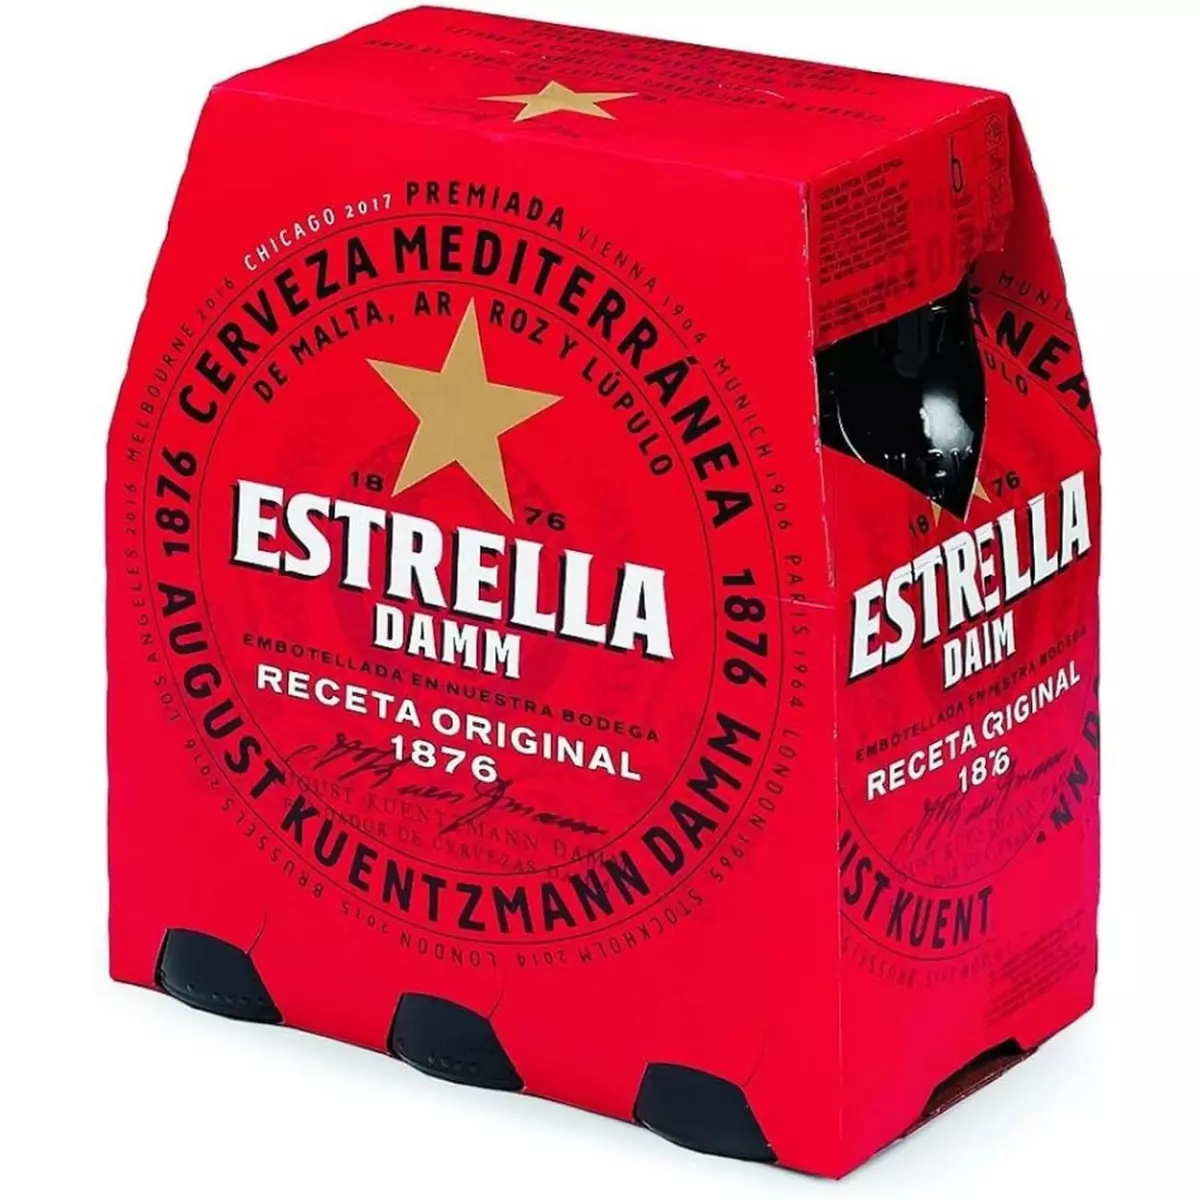 ESTRELLA Damm bière blonde 5.4% bouteilles 6x25cl